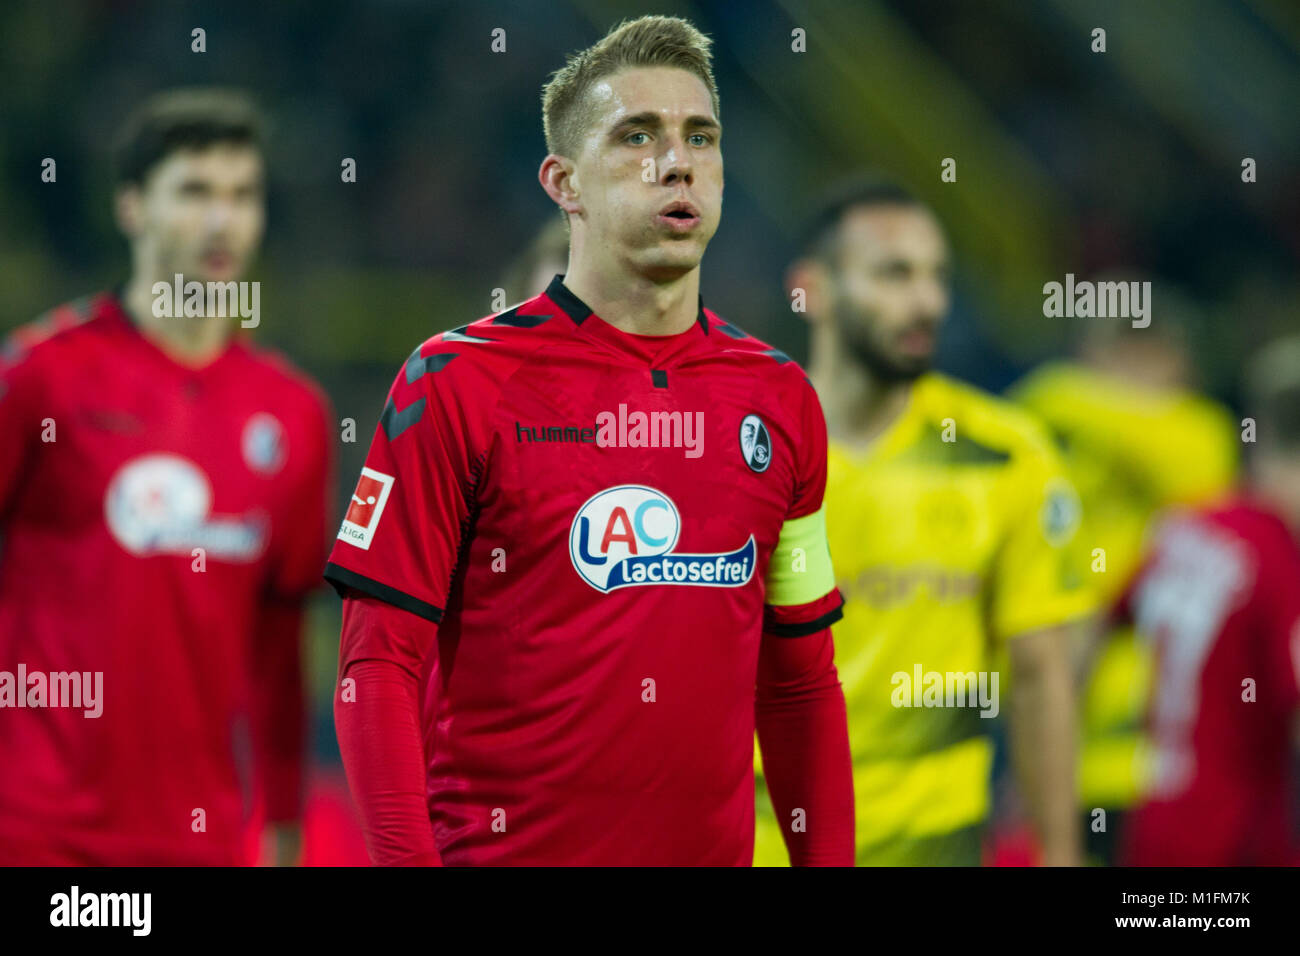 Dortmund, Deutschland. 27th Jan, 2018. Nils PETERSEN (FR) macht dicke ' Backen ', frustratedriert, frustrated, gefrustratedet, disappointed, entt uscht, Entt uschung, Enttaeuschung, traurig, halbe Figur, Halbfigur, Mimik, Fussball 1. Bundesliga, 20. matchday, Borussia Dortmund (DO) - SC Freiburg (FR) 2:2, am 27.01.2018 in Dortmund/ Germany. |usage worldwide Credit: dpa/Alamy Live News Stock Photo